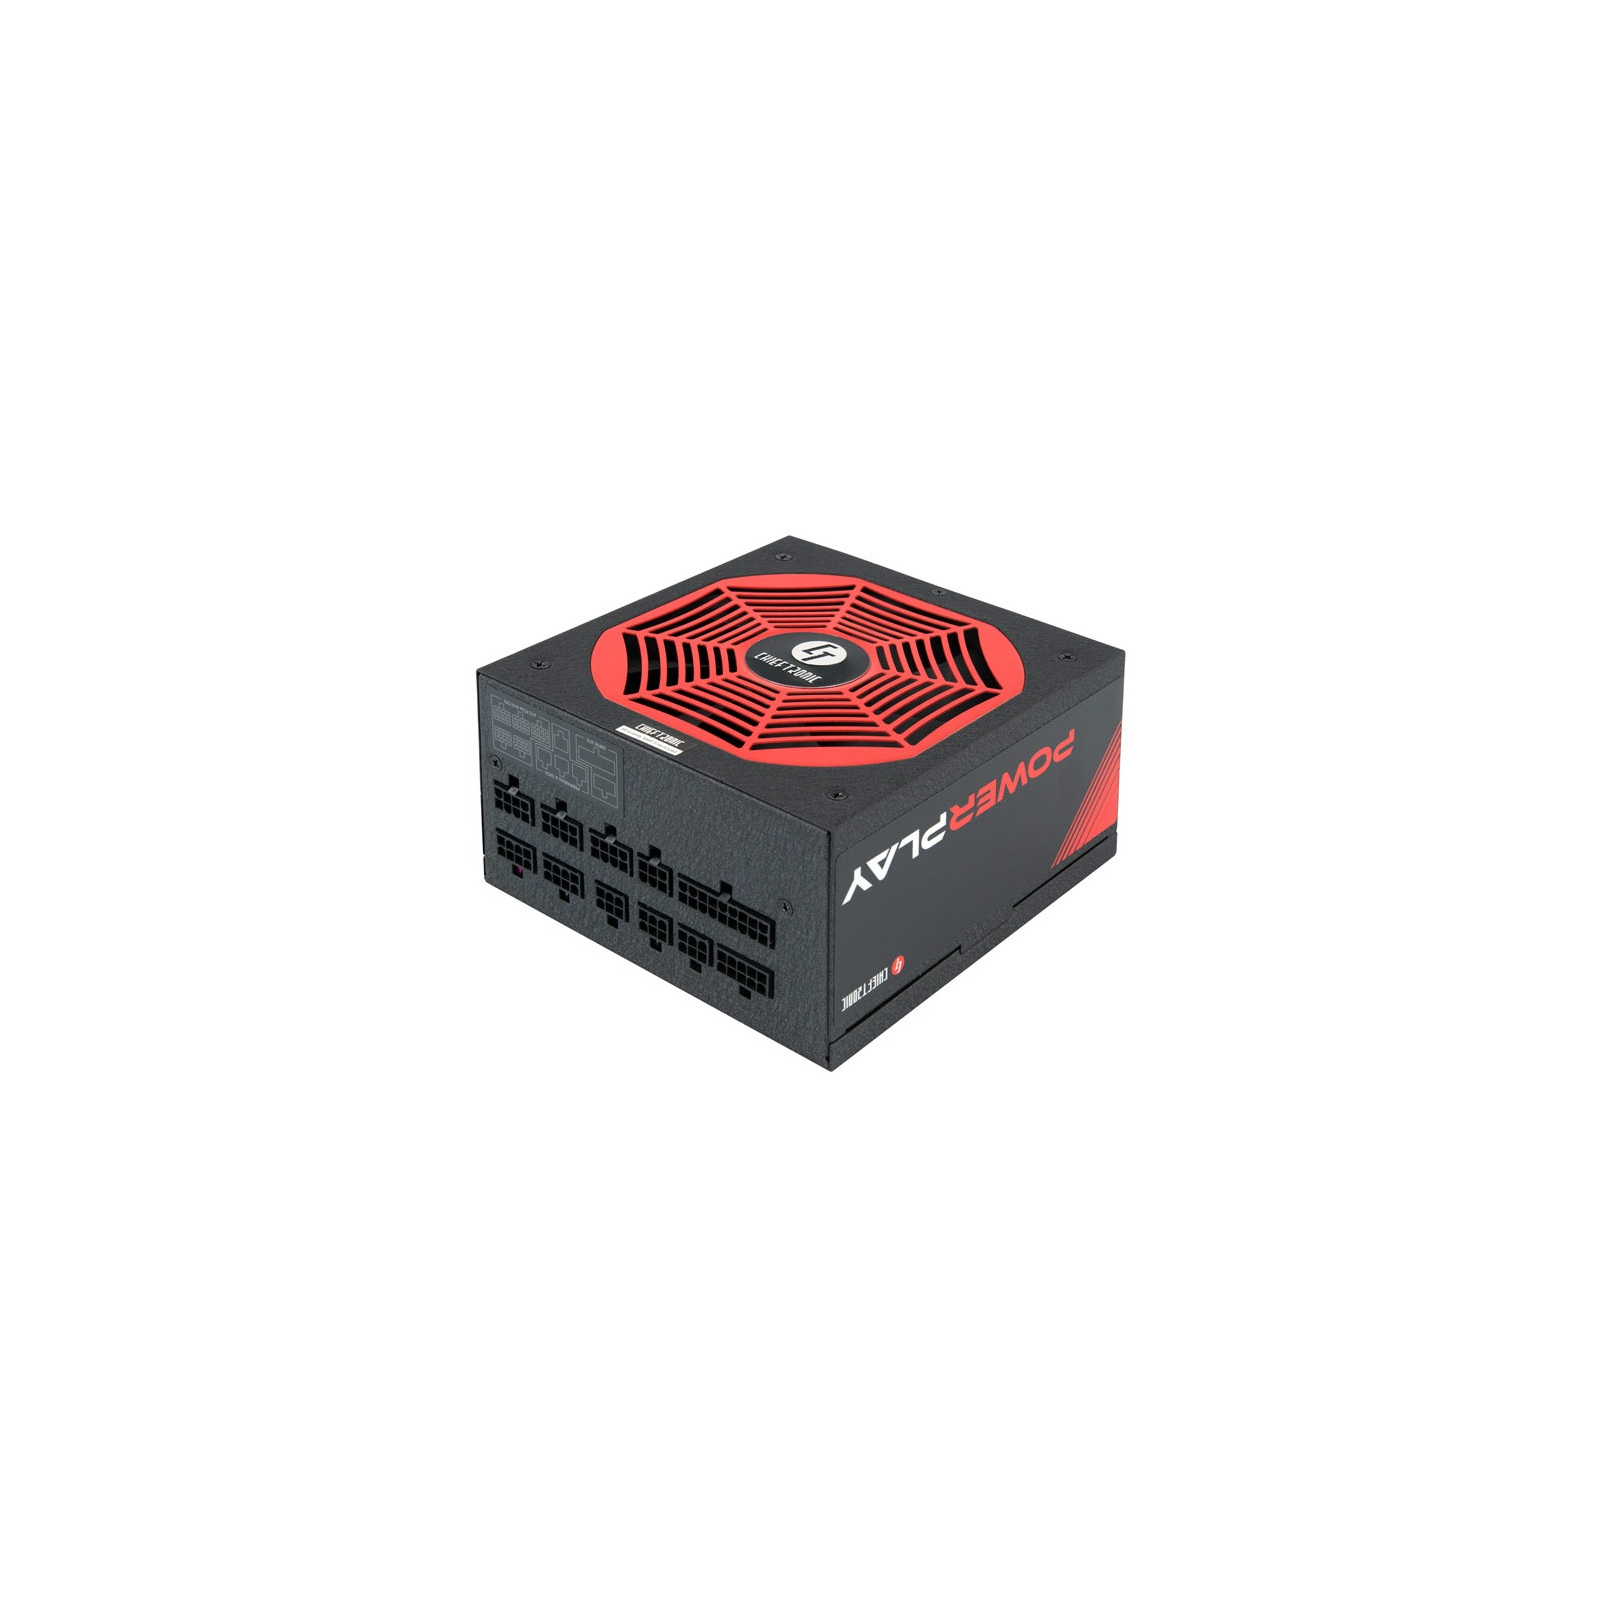 Блок питания Chieftronic 1050W (GPU-1050FC)